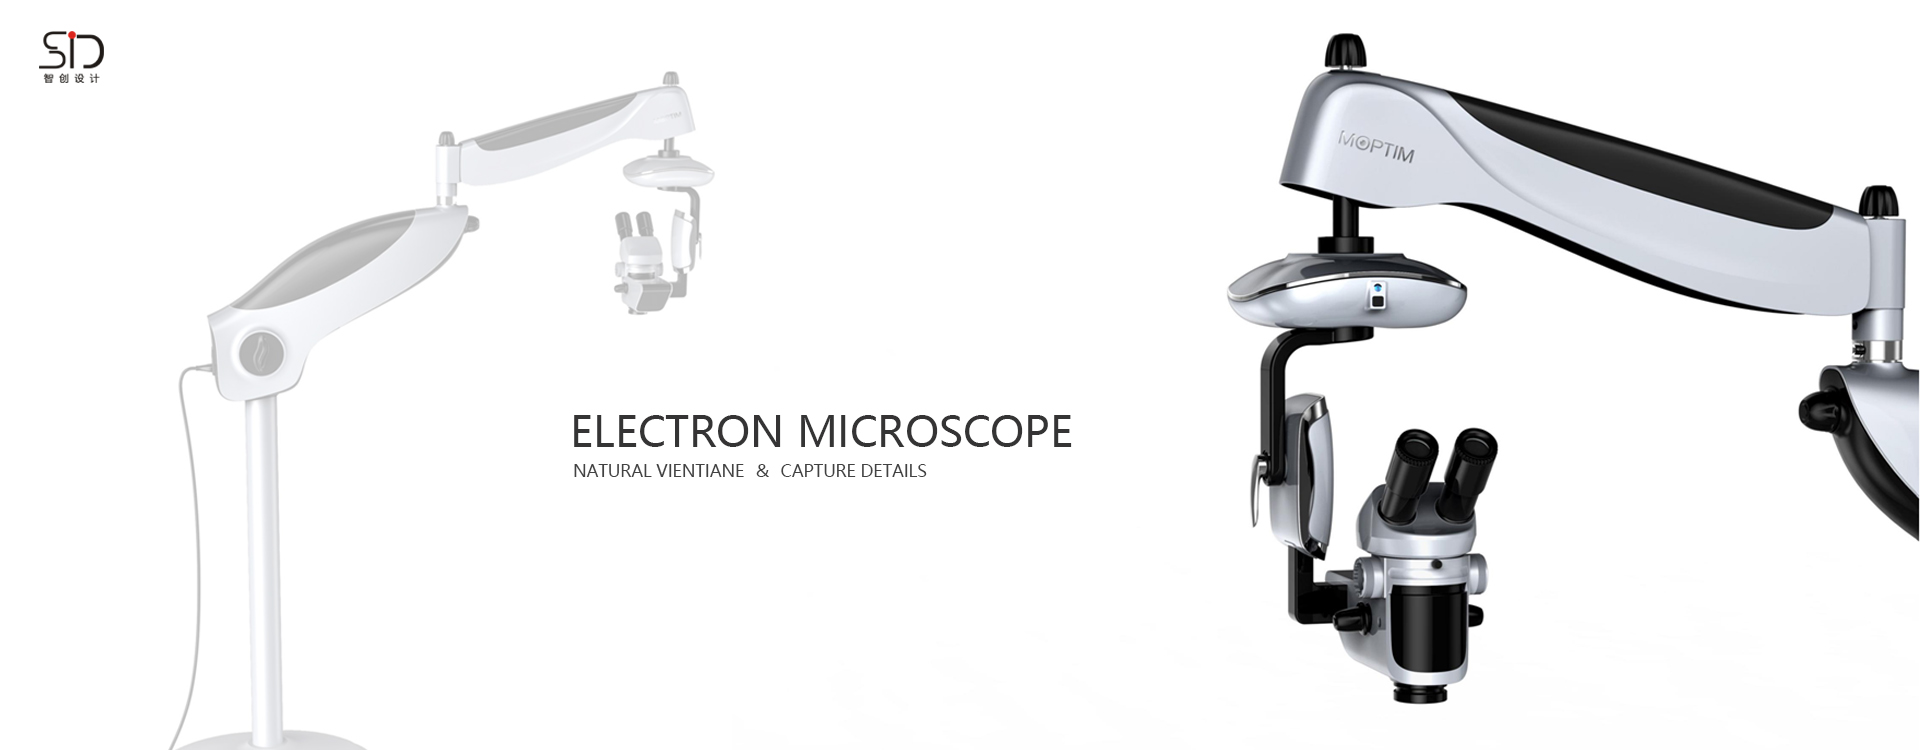 电子显微镜外观设/医疗设备设计/医疗器械设计